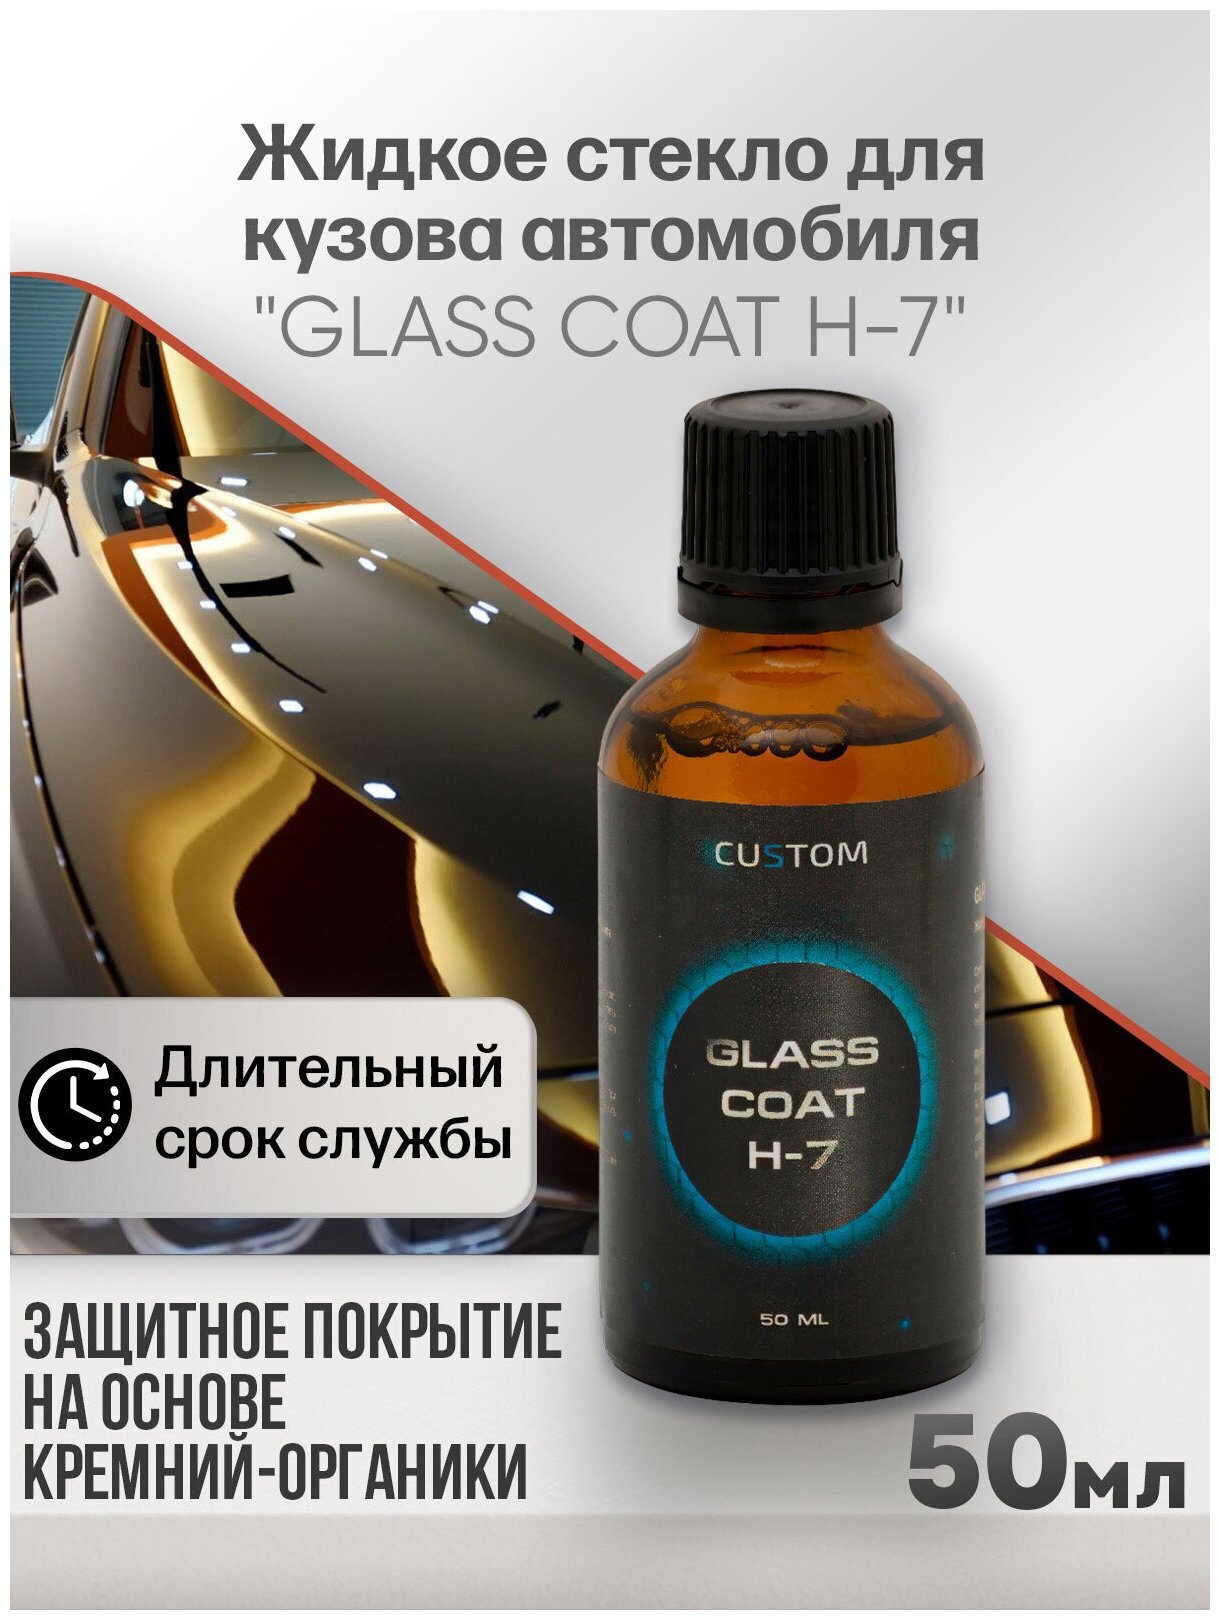 Жидкое стекло для кузова автомобиля CUSTOM Glass Coat H-7 защитное покрытие, 50мл